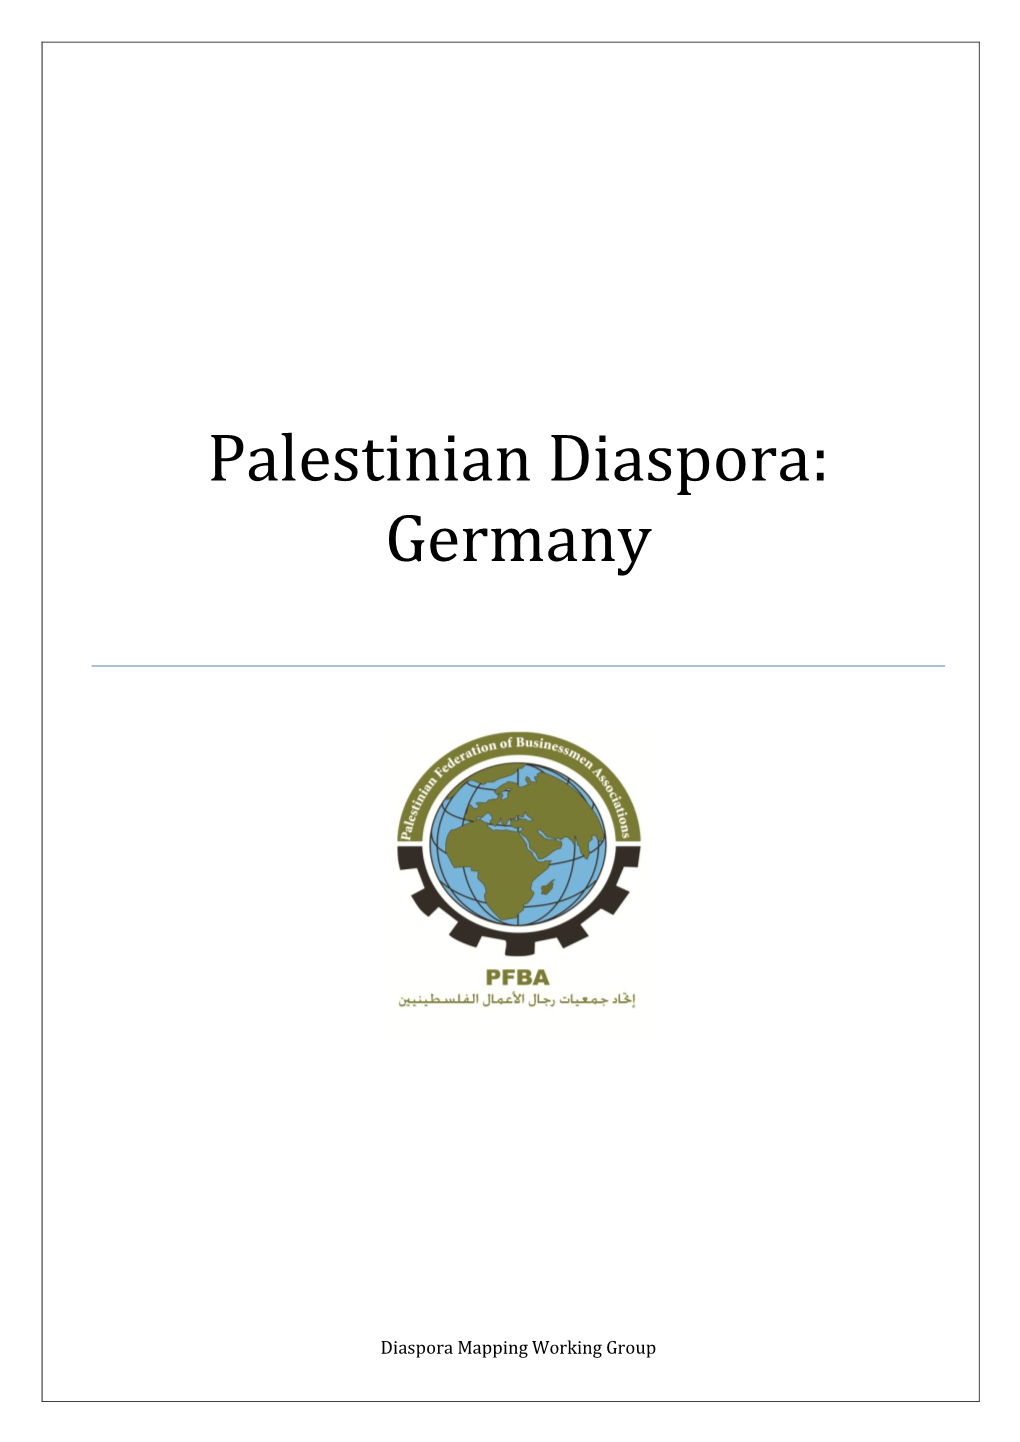 Palestinian Diaspora: Germany